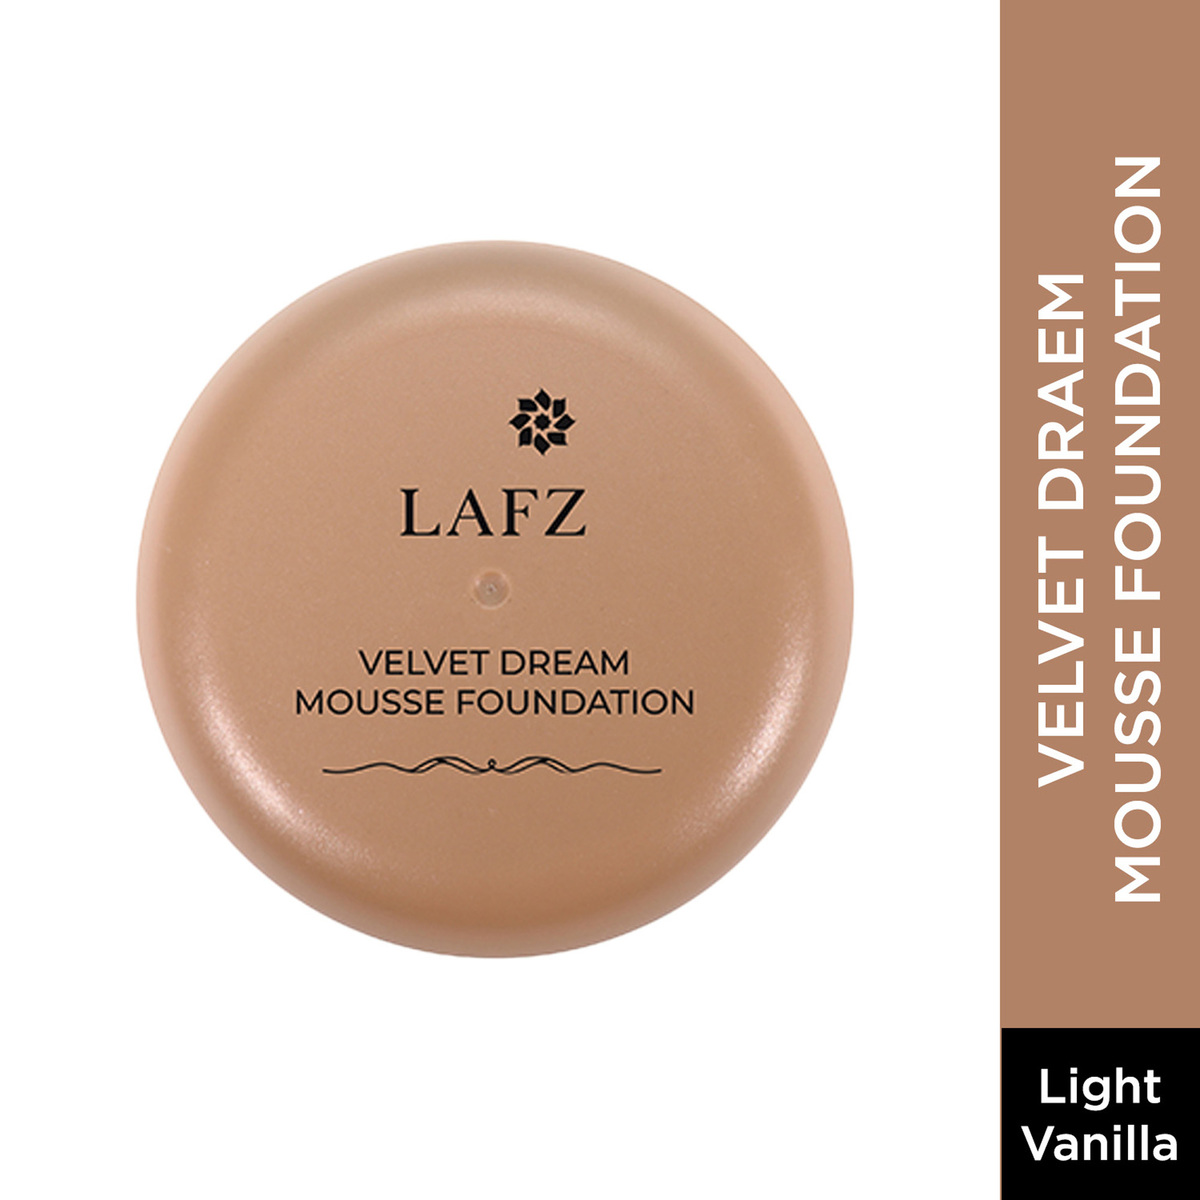 Lafz Velvet Dream Mousse Foundation, 20 g, Light Vanilla